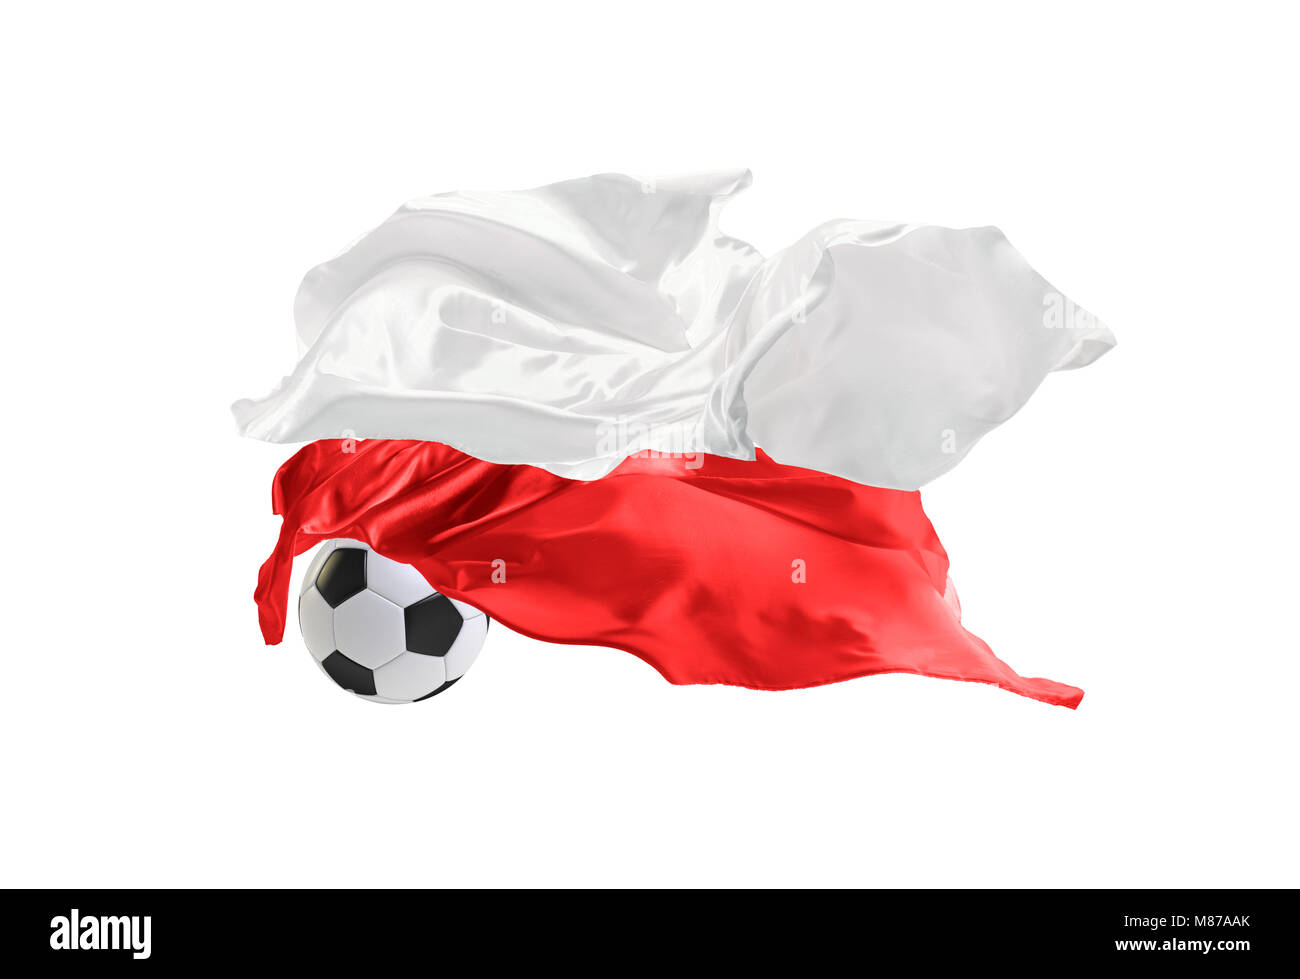 Le drapeau national de la Pologne. Coupe du monde. La Russie 2018 Banque D'Images